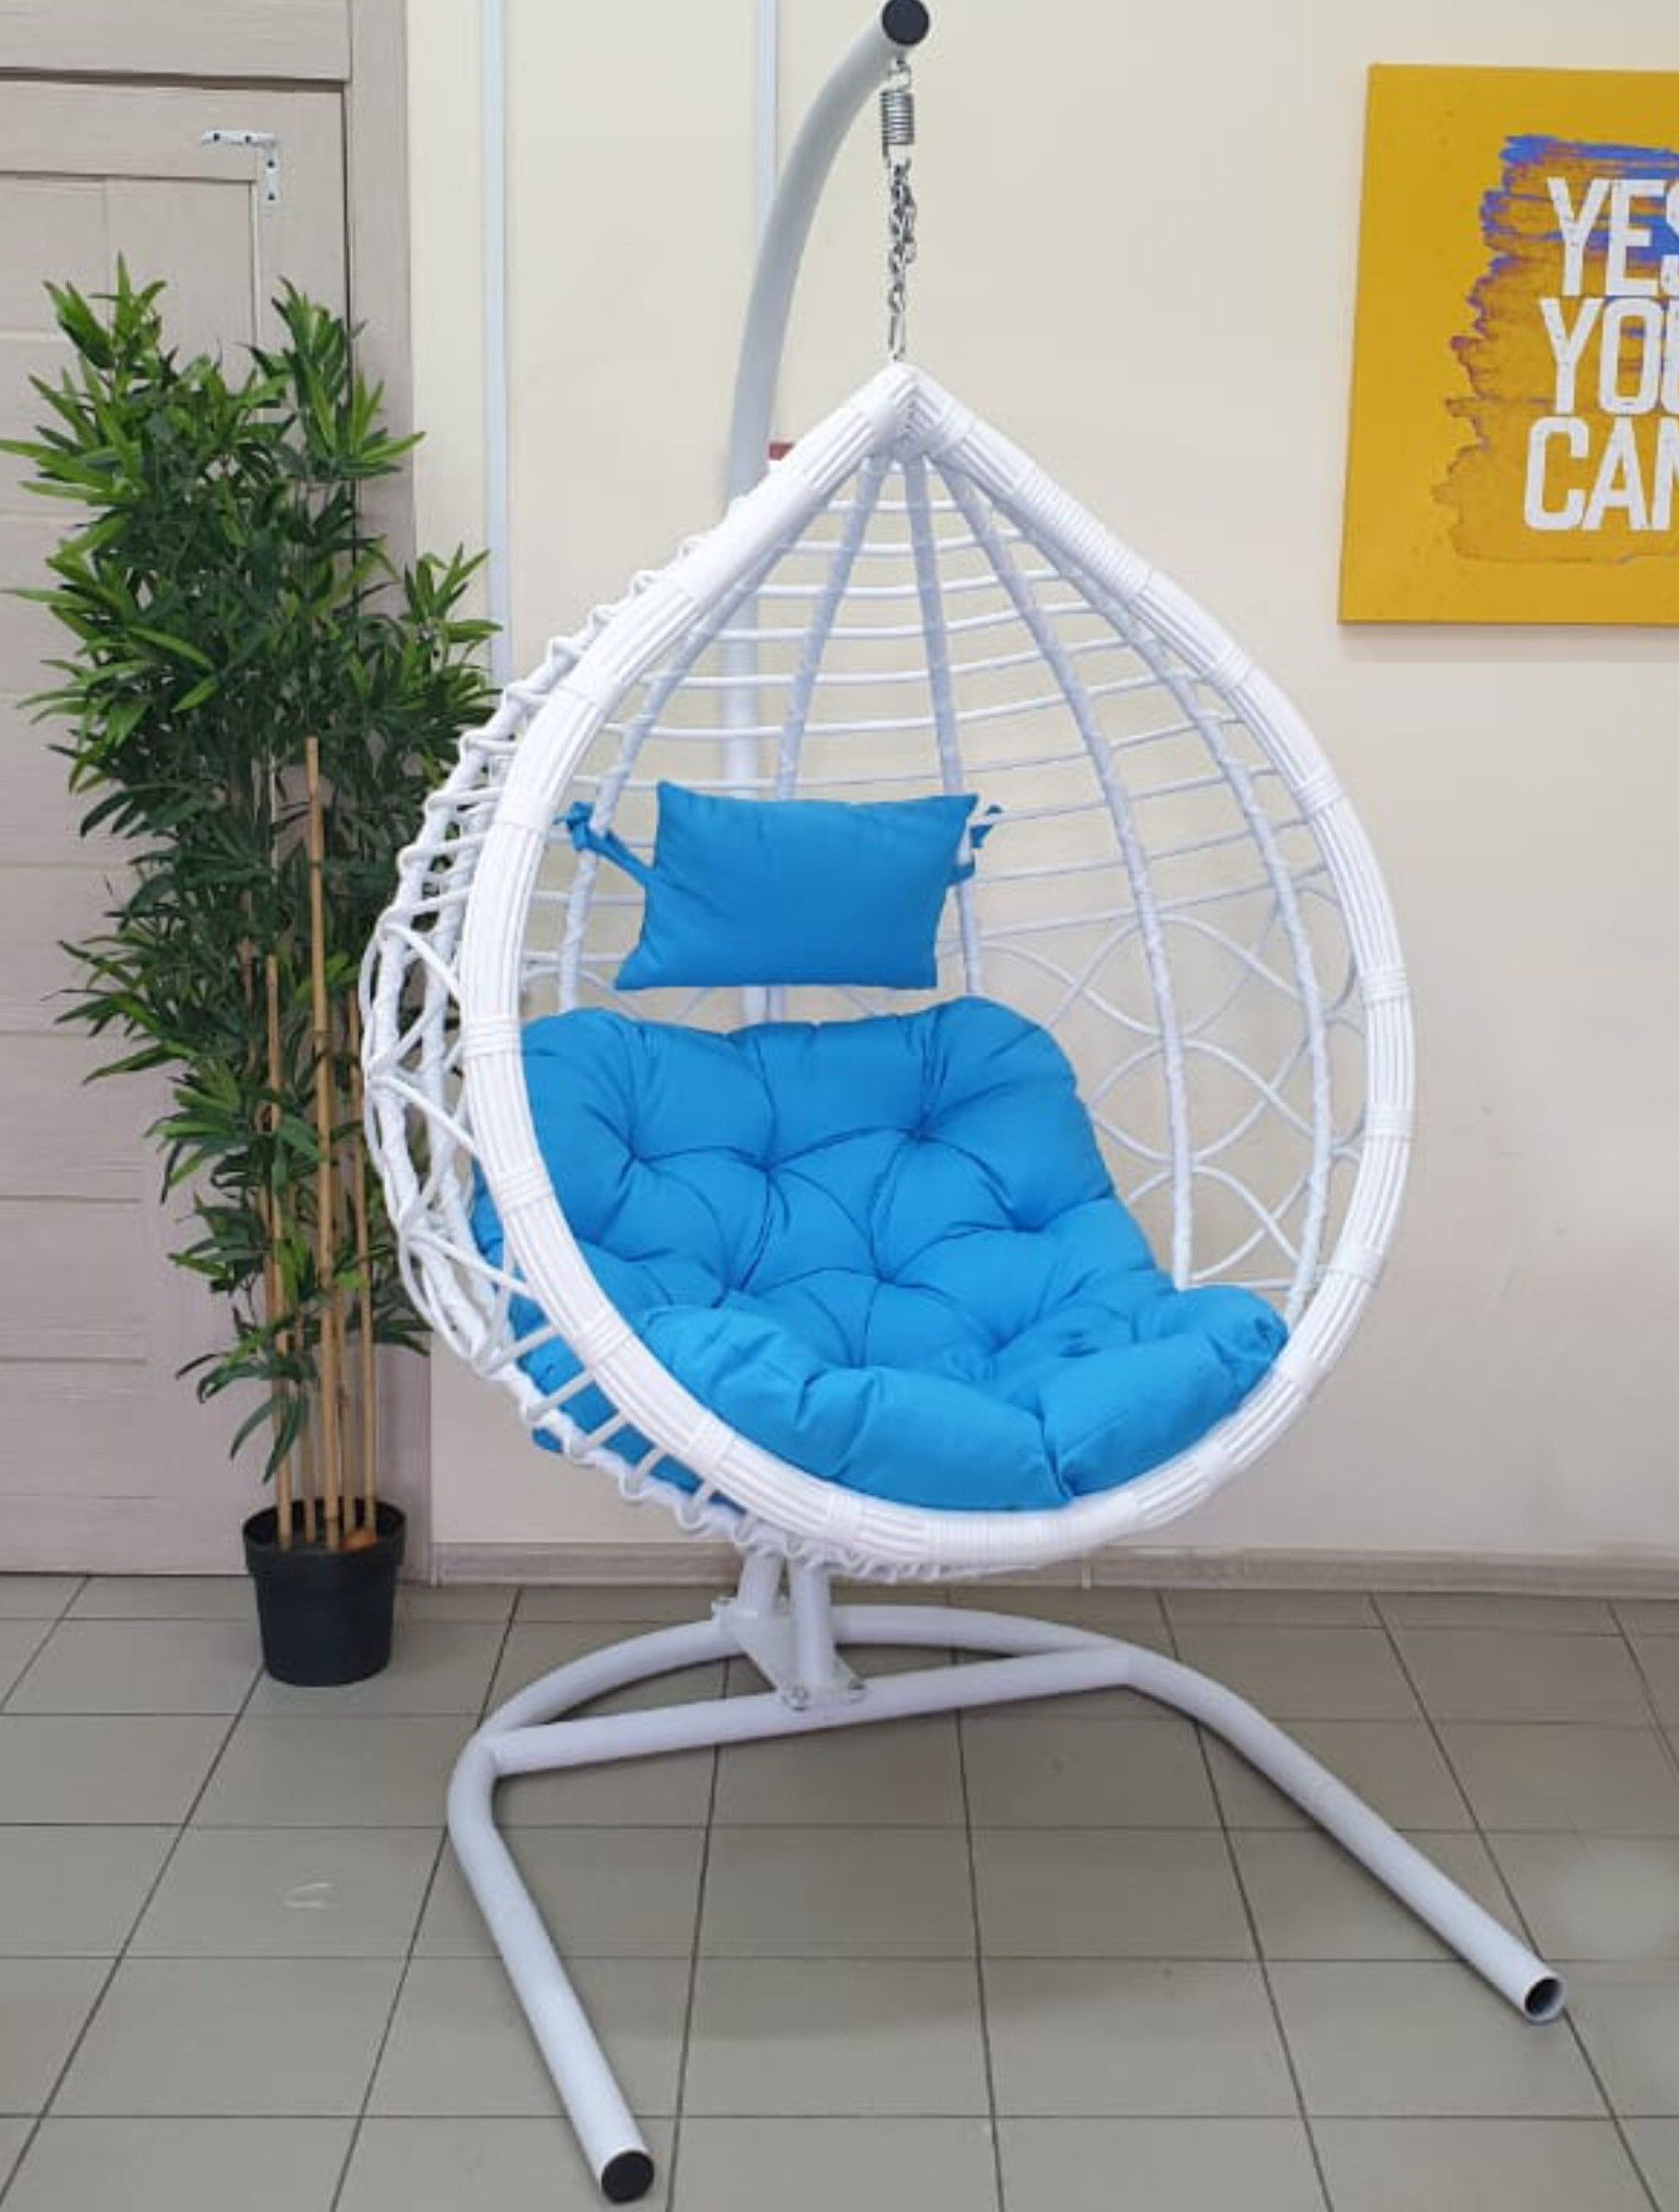 Кресло-капля подвесное круглое c голубой подушкой белое Veil2